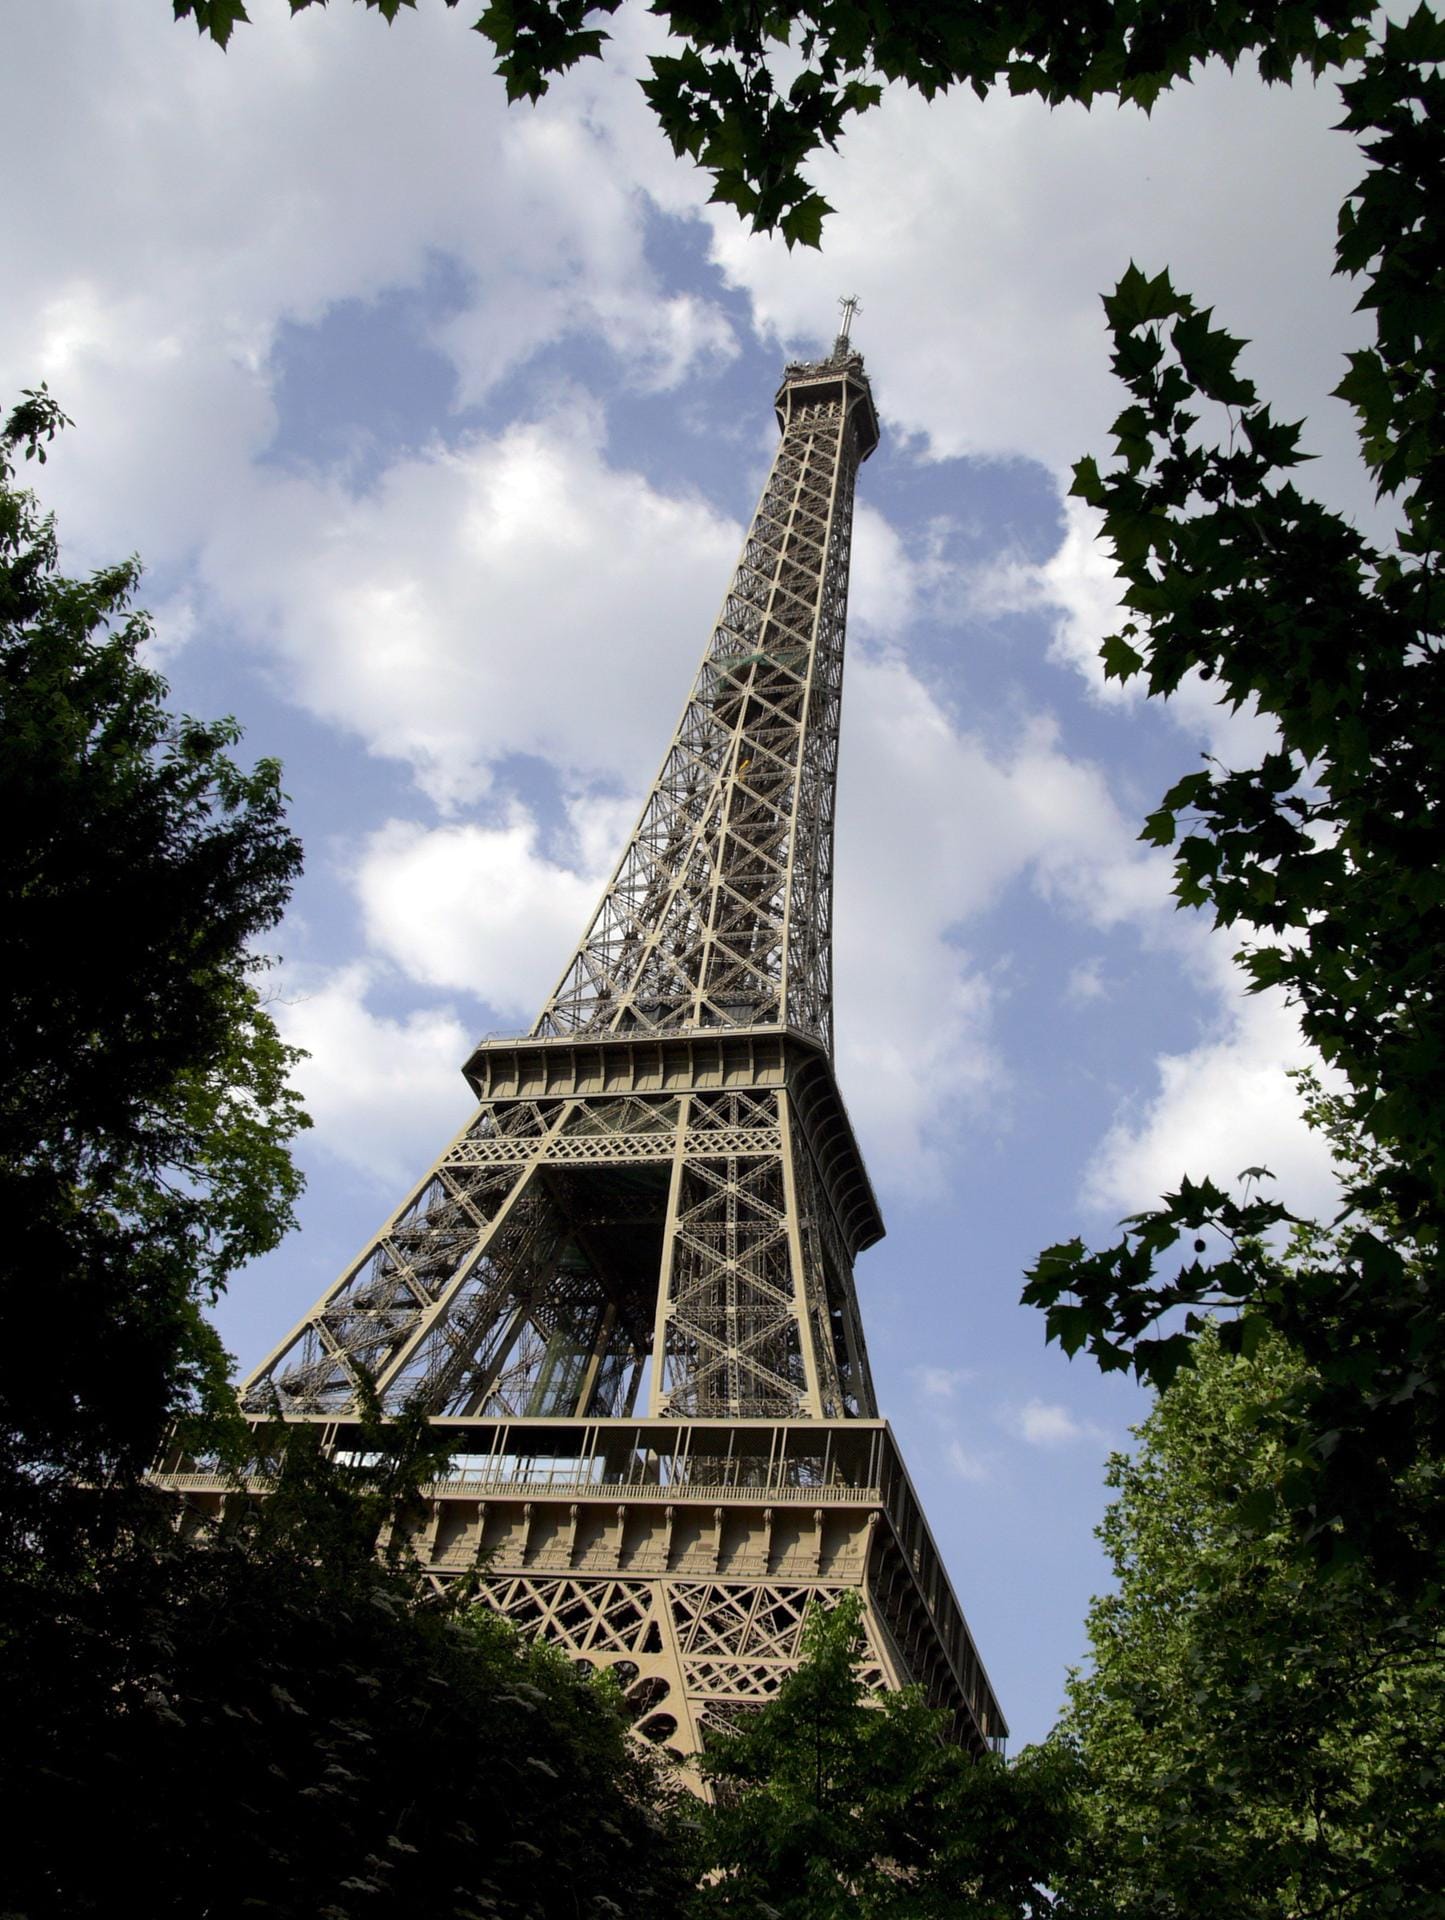 Der Eiffelturm in Paris: Mit der drahtlosen Telegrafie bekam der Eisenturm einen militärischen Nutzen. Zwischen 1898 und 1903 wurden zwischen dem Eiffelturm und einigen Militäranlagen in Paris mehrere Funkverbindungen geschaffen und 1906 ein Radiosender eingerichtet.